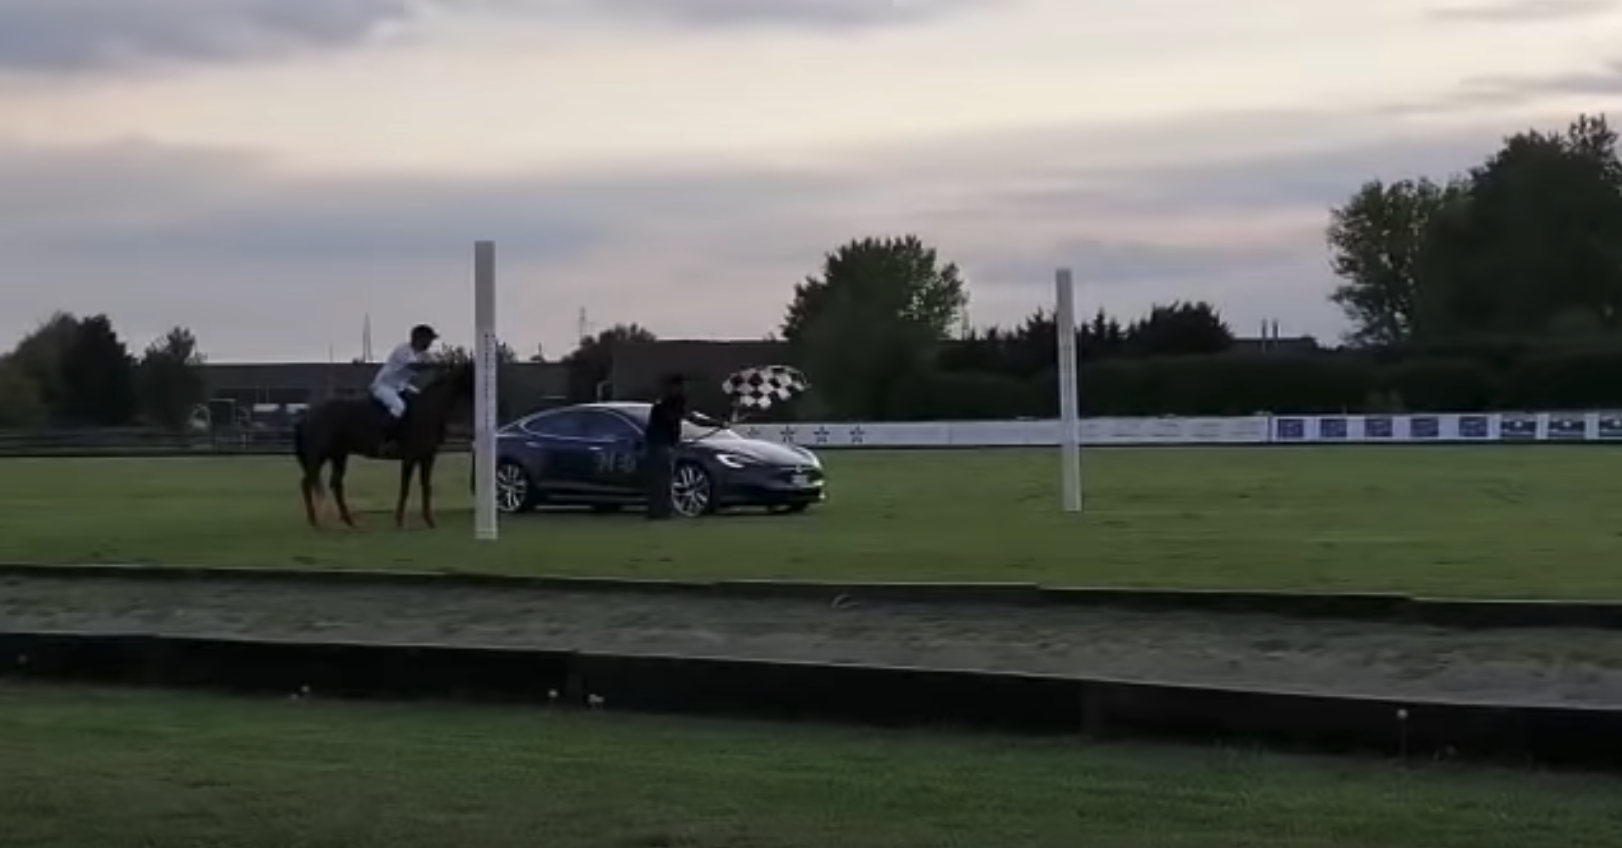 Tesla Model S vs a horse